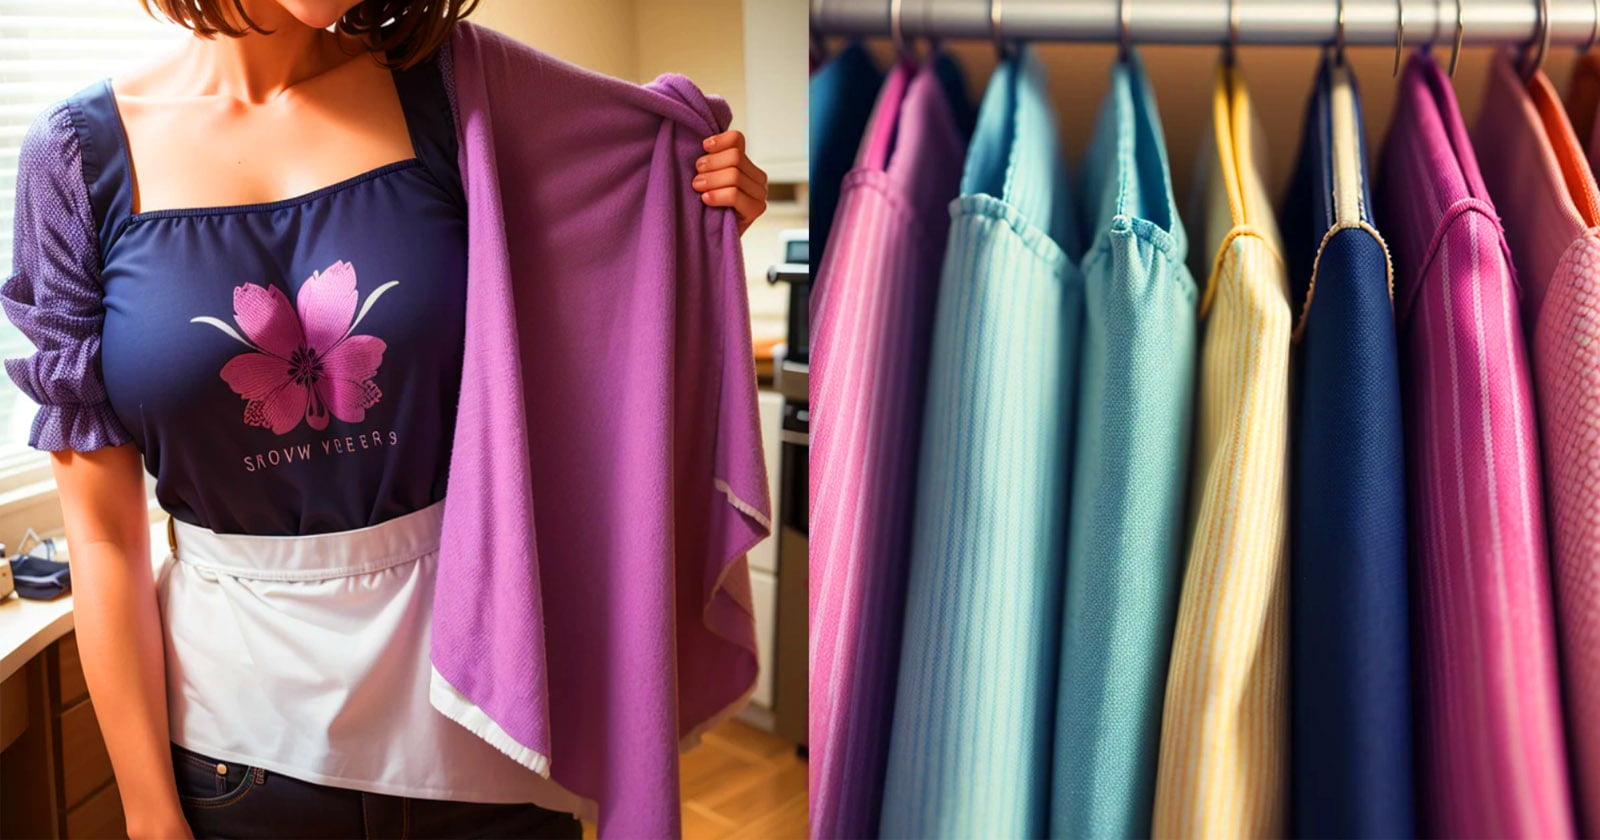 Blogueira revela: Tecido barato que parece caro para projetos de costura